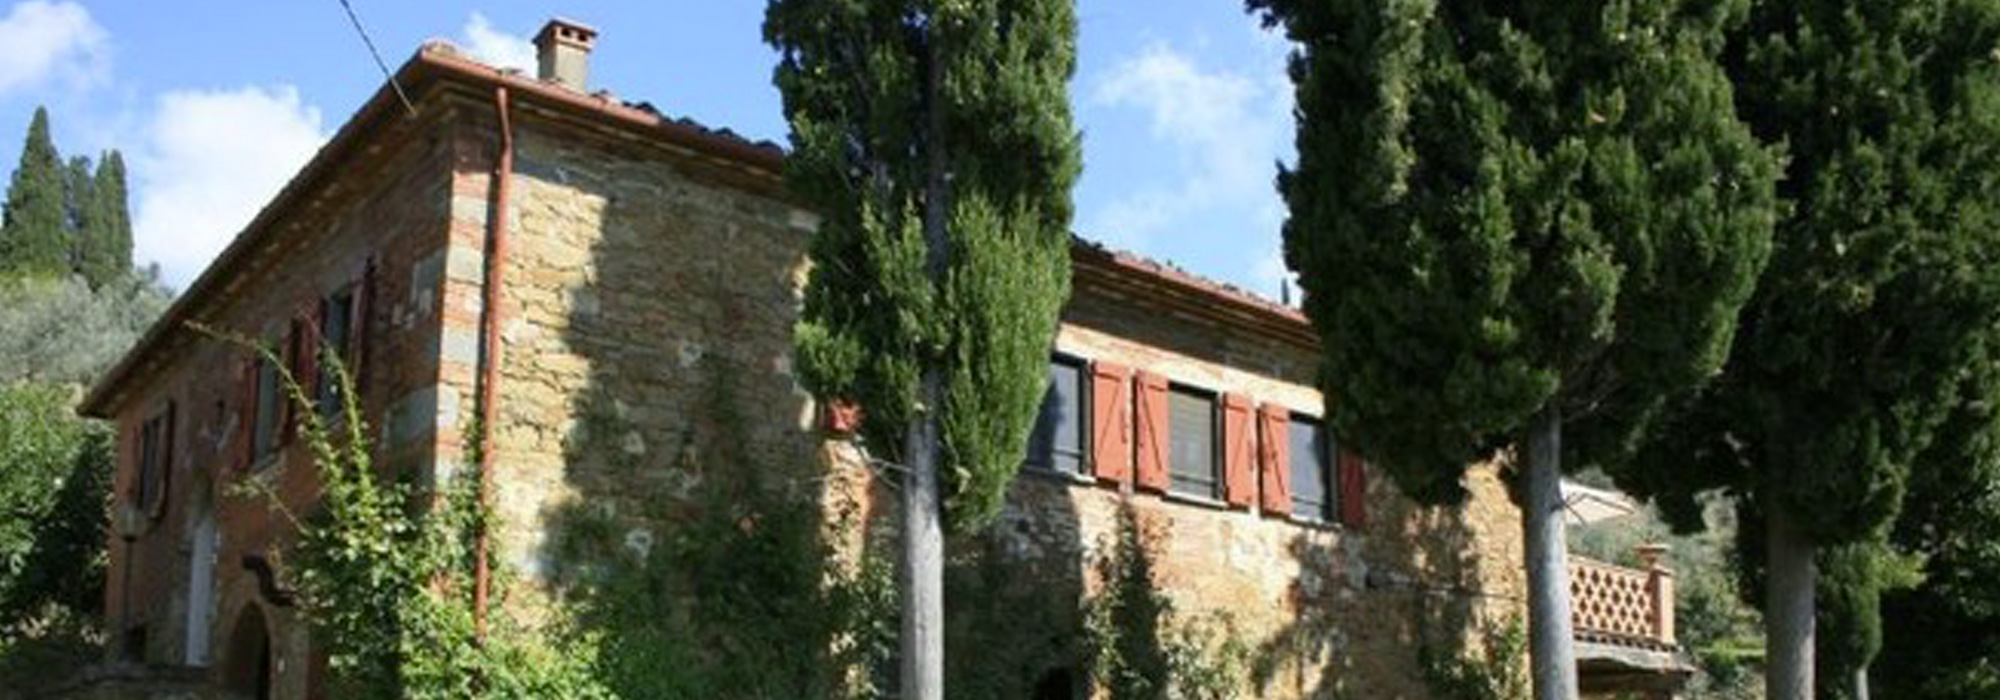 Rustico, Casale in Vendita in zona Cozzano a Castiglion Fiorentino